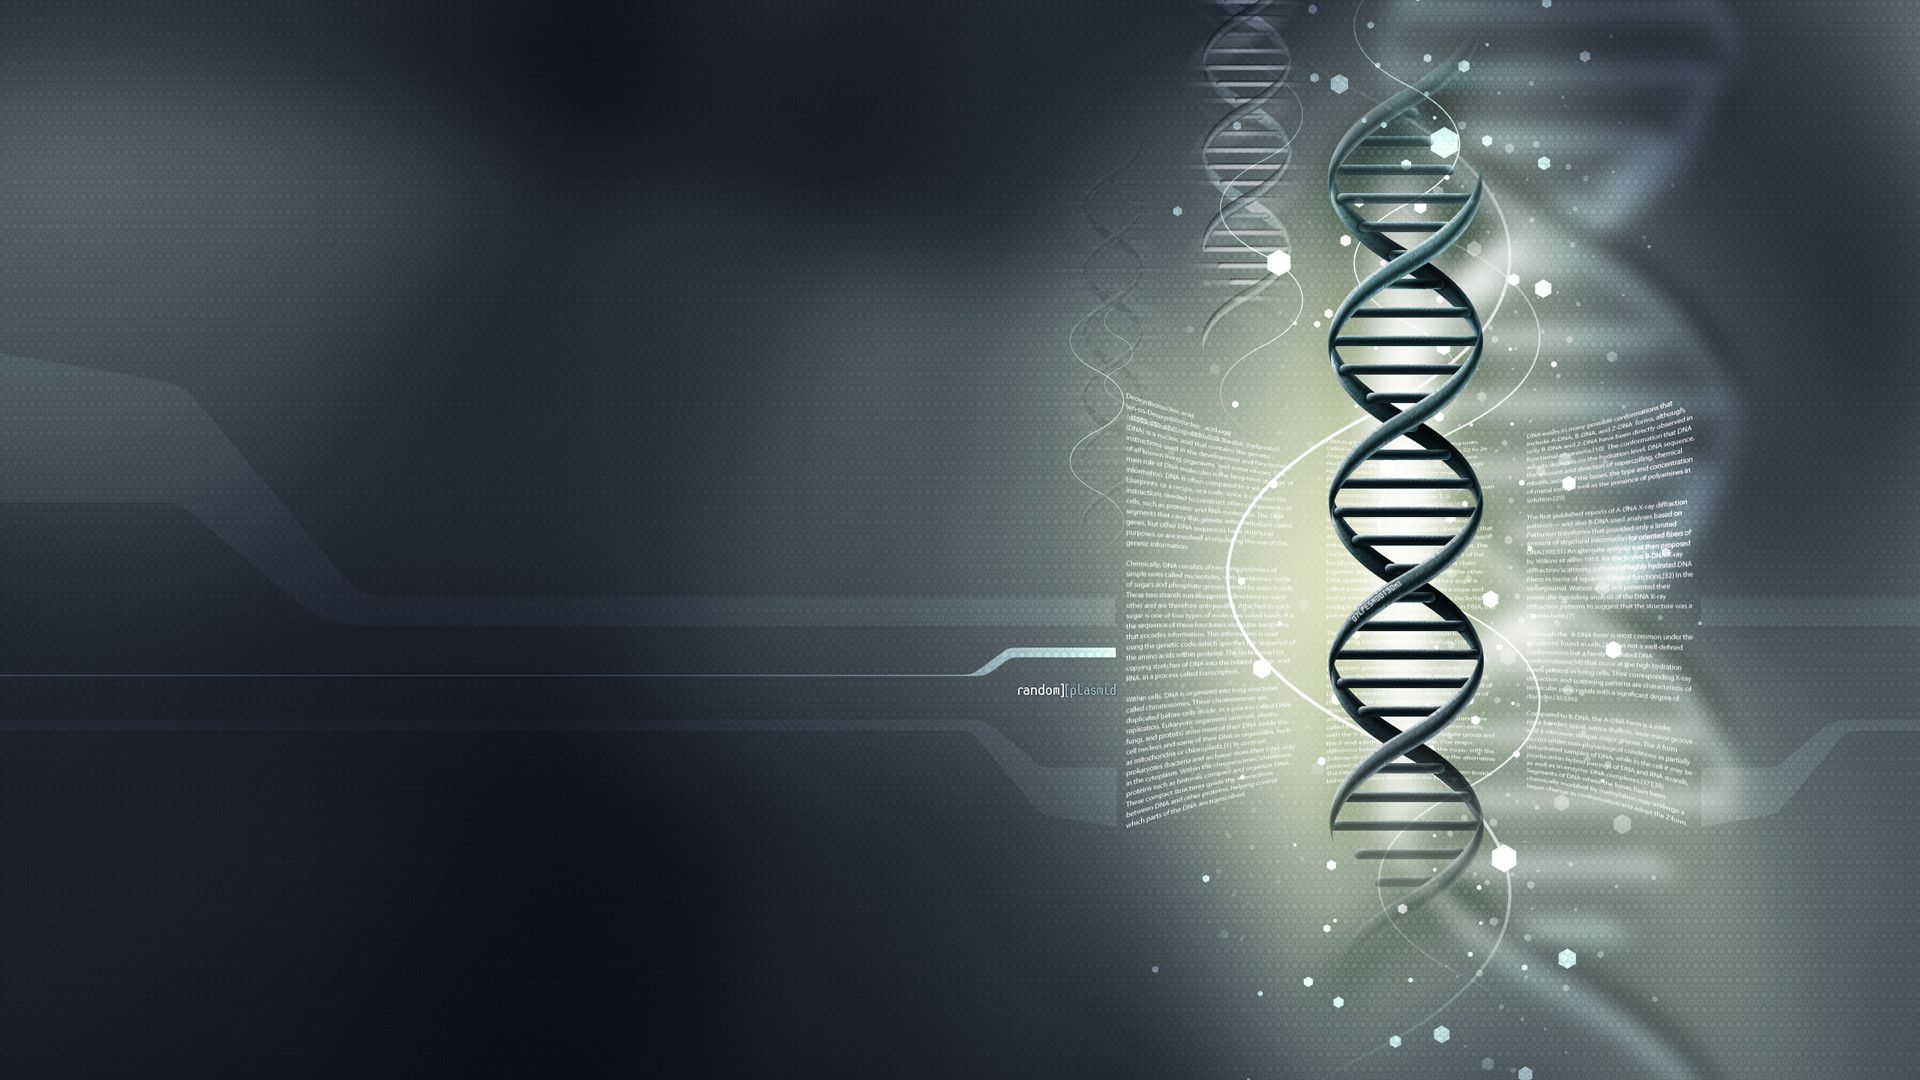 والپیپر گرافیکی DNA زیبا برای علاقمندان علوم کامپیوتر